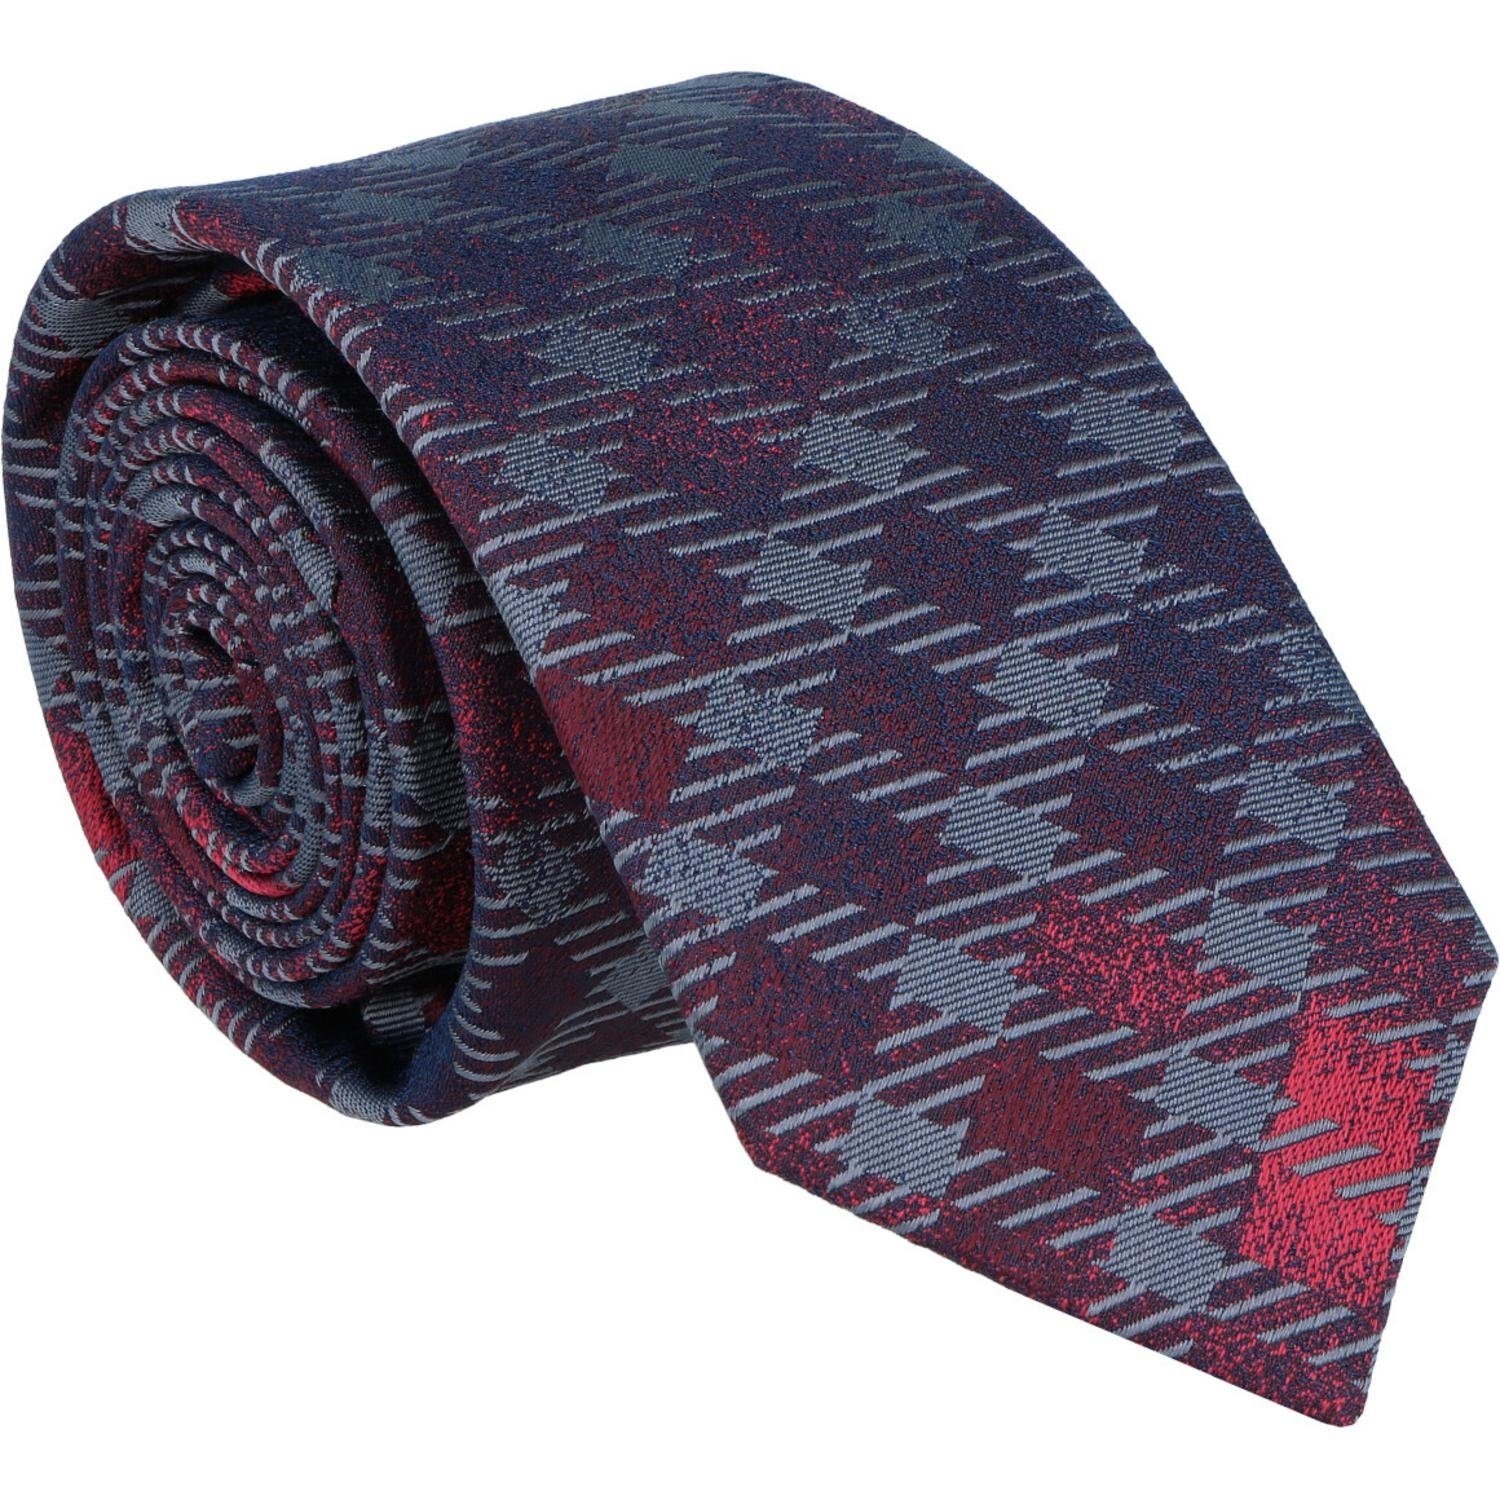 WILLEN 100% Seide Krawatte 6,5cm Krawatte